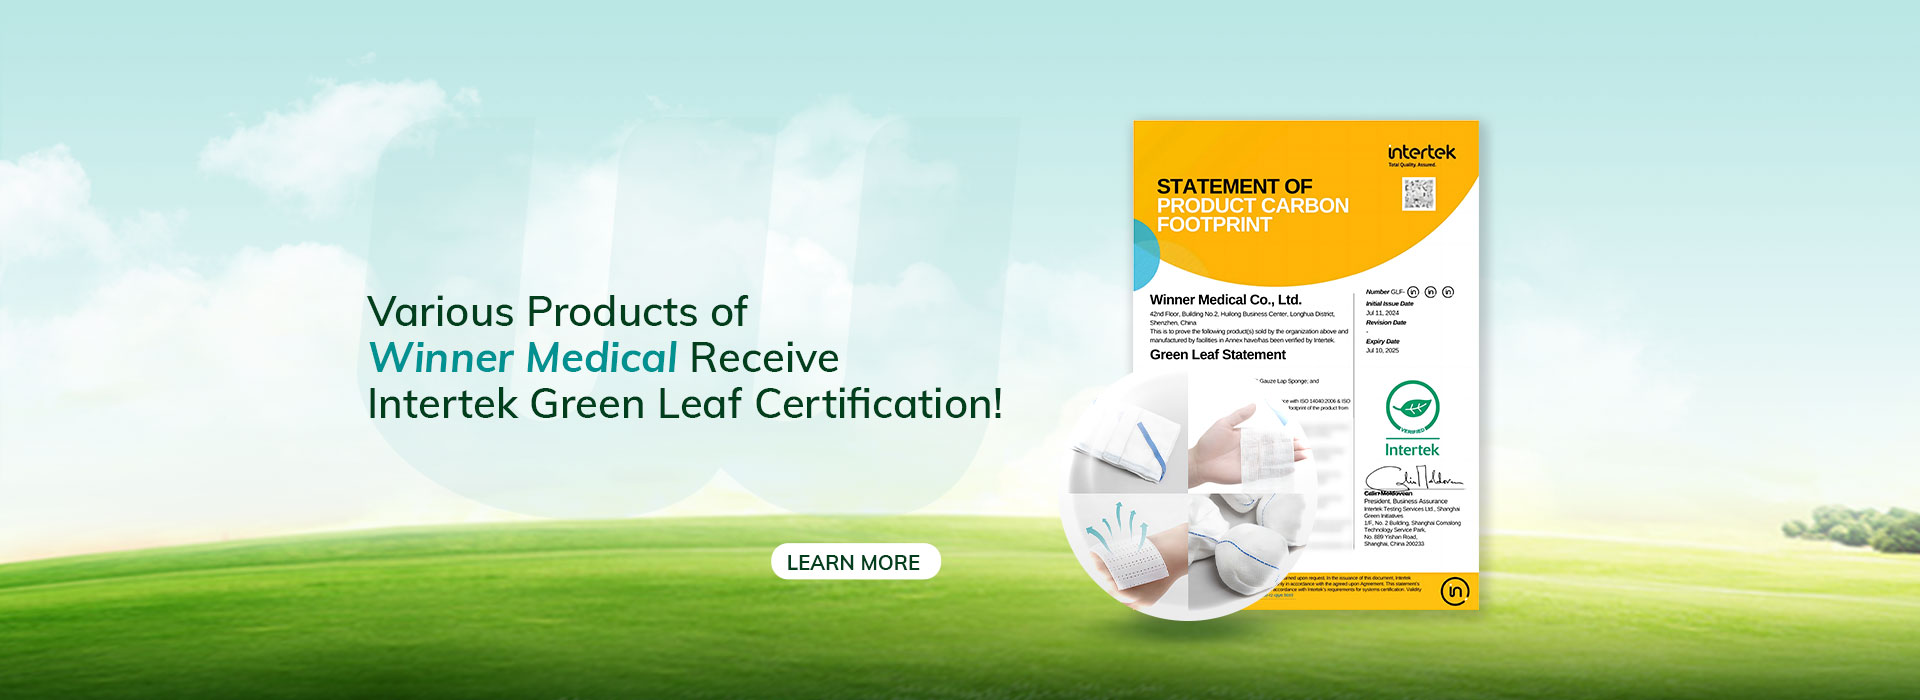 ¡NOTICIAS! ¡Los diversos productos de Winner Medical reciben la certificación de hoja verde de Intertek!